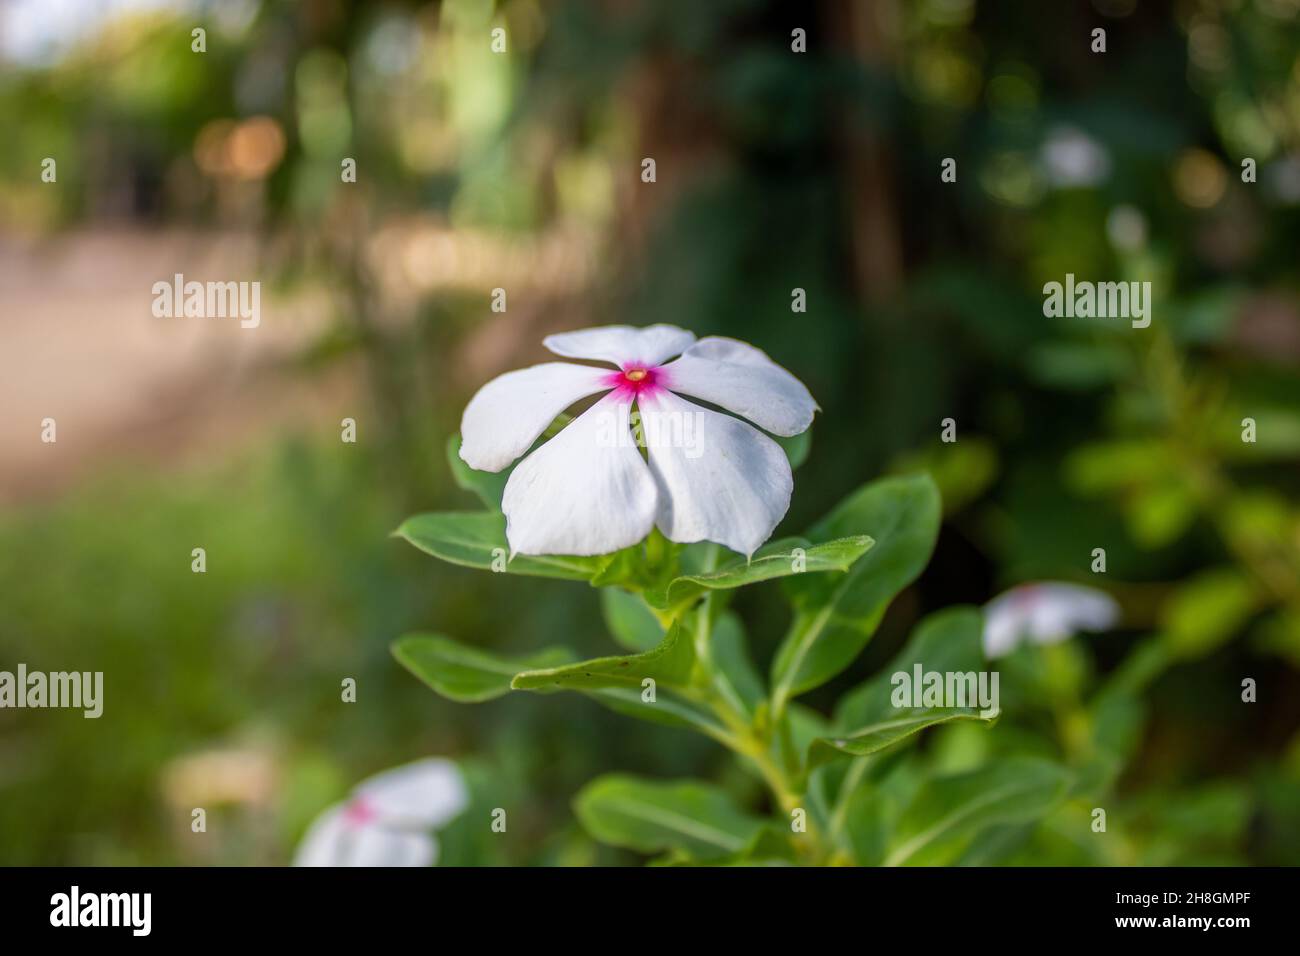 white flower in the garden Stock Photo